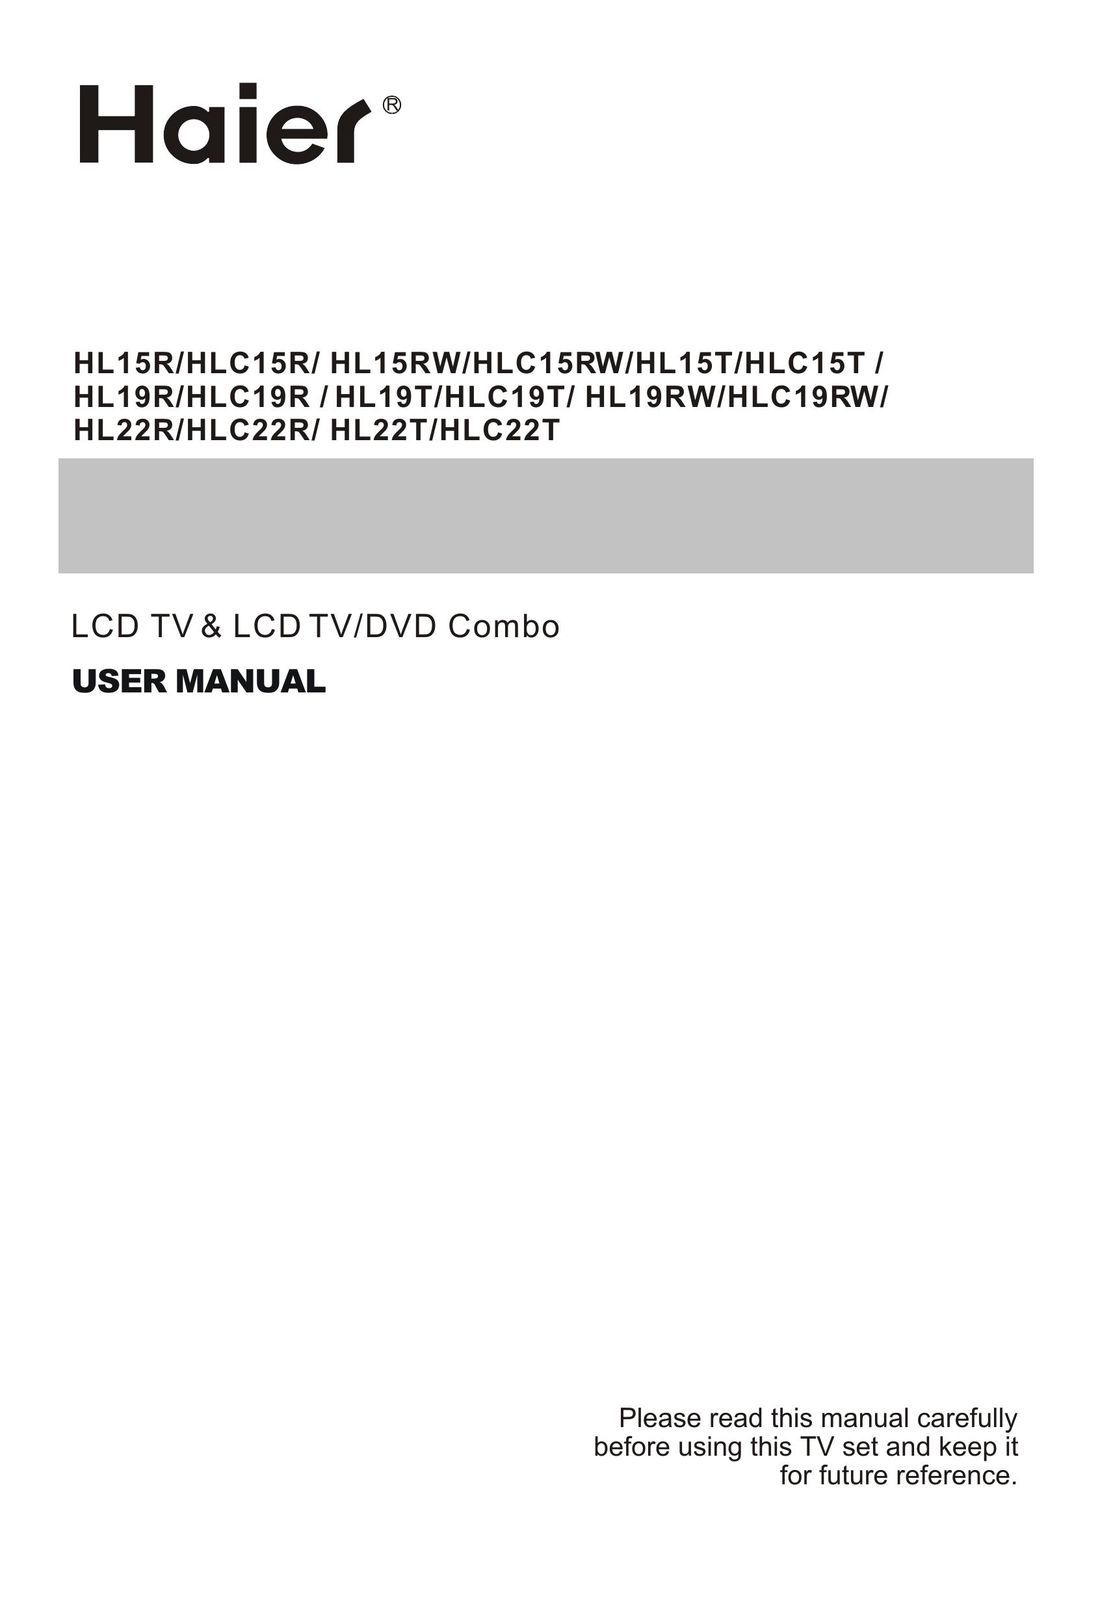 Haier HLC22T TV DVD Combo User Manual